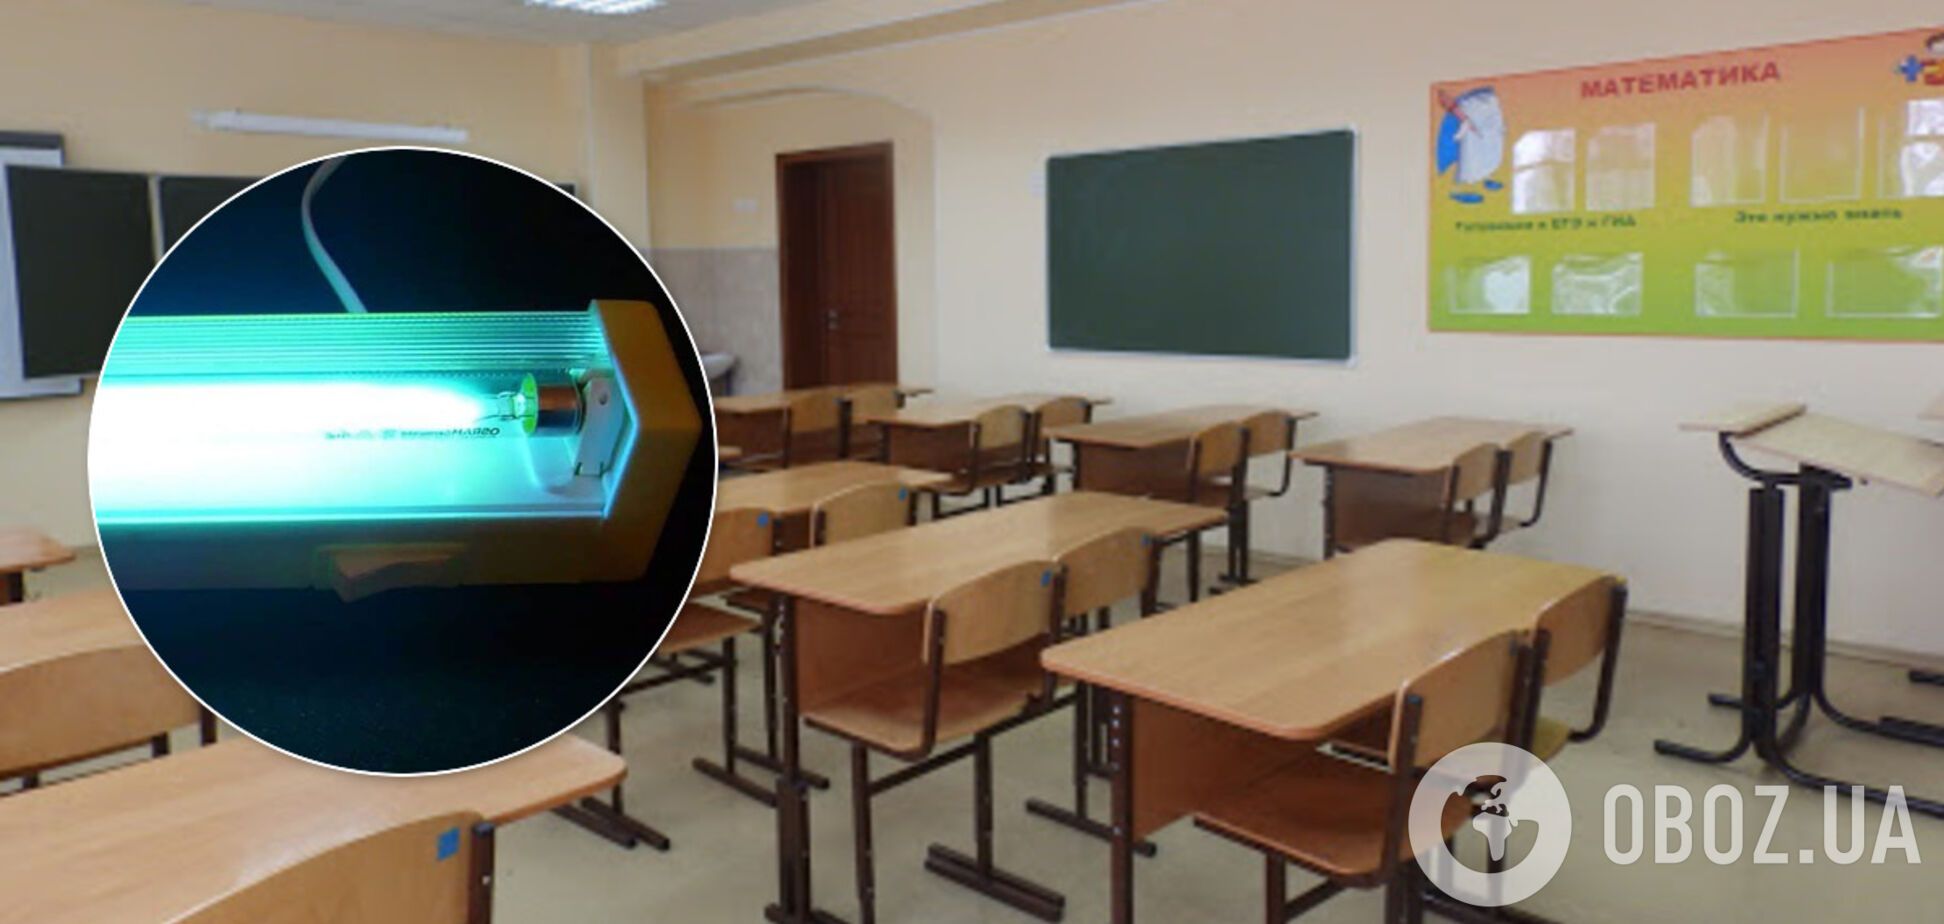 В России учительница сожгла первоклассникам глаза и лицо из-за кварцевой лампы